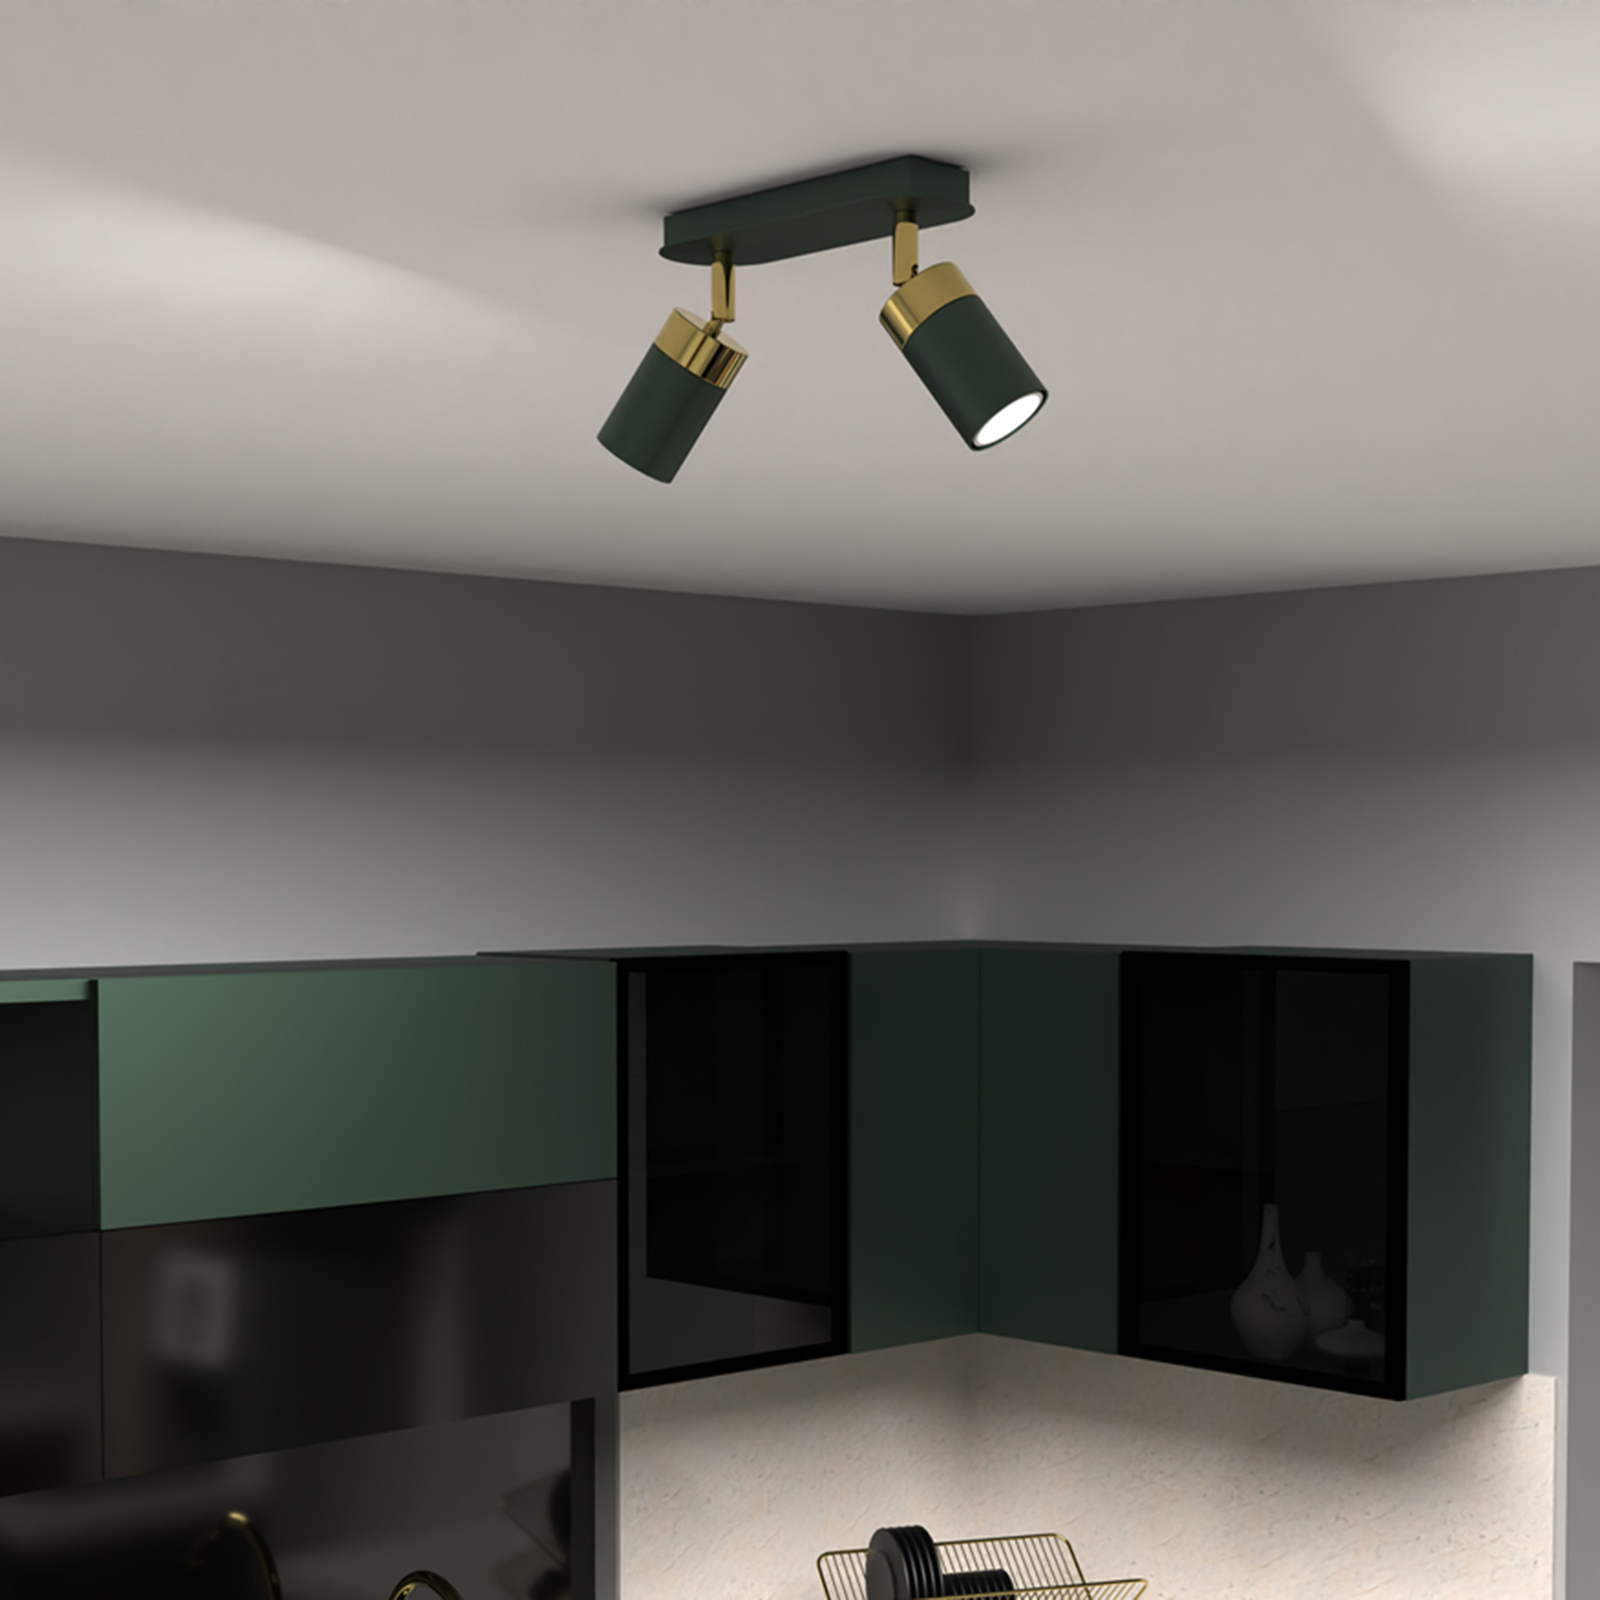 Spot pour plafond Joker, vert/doré, à 2 lampes